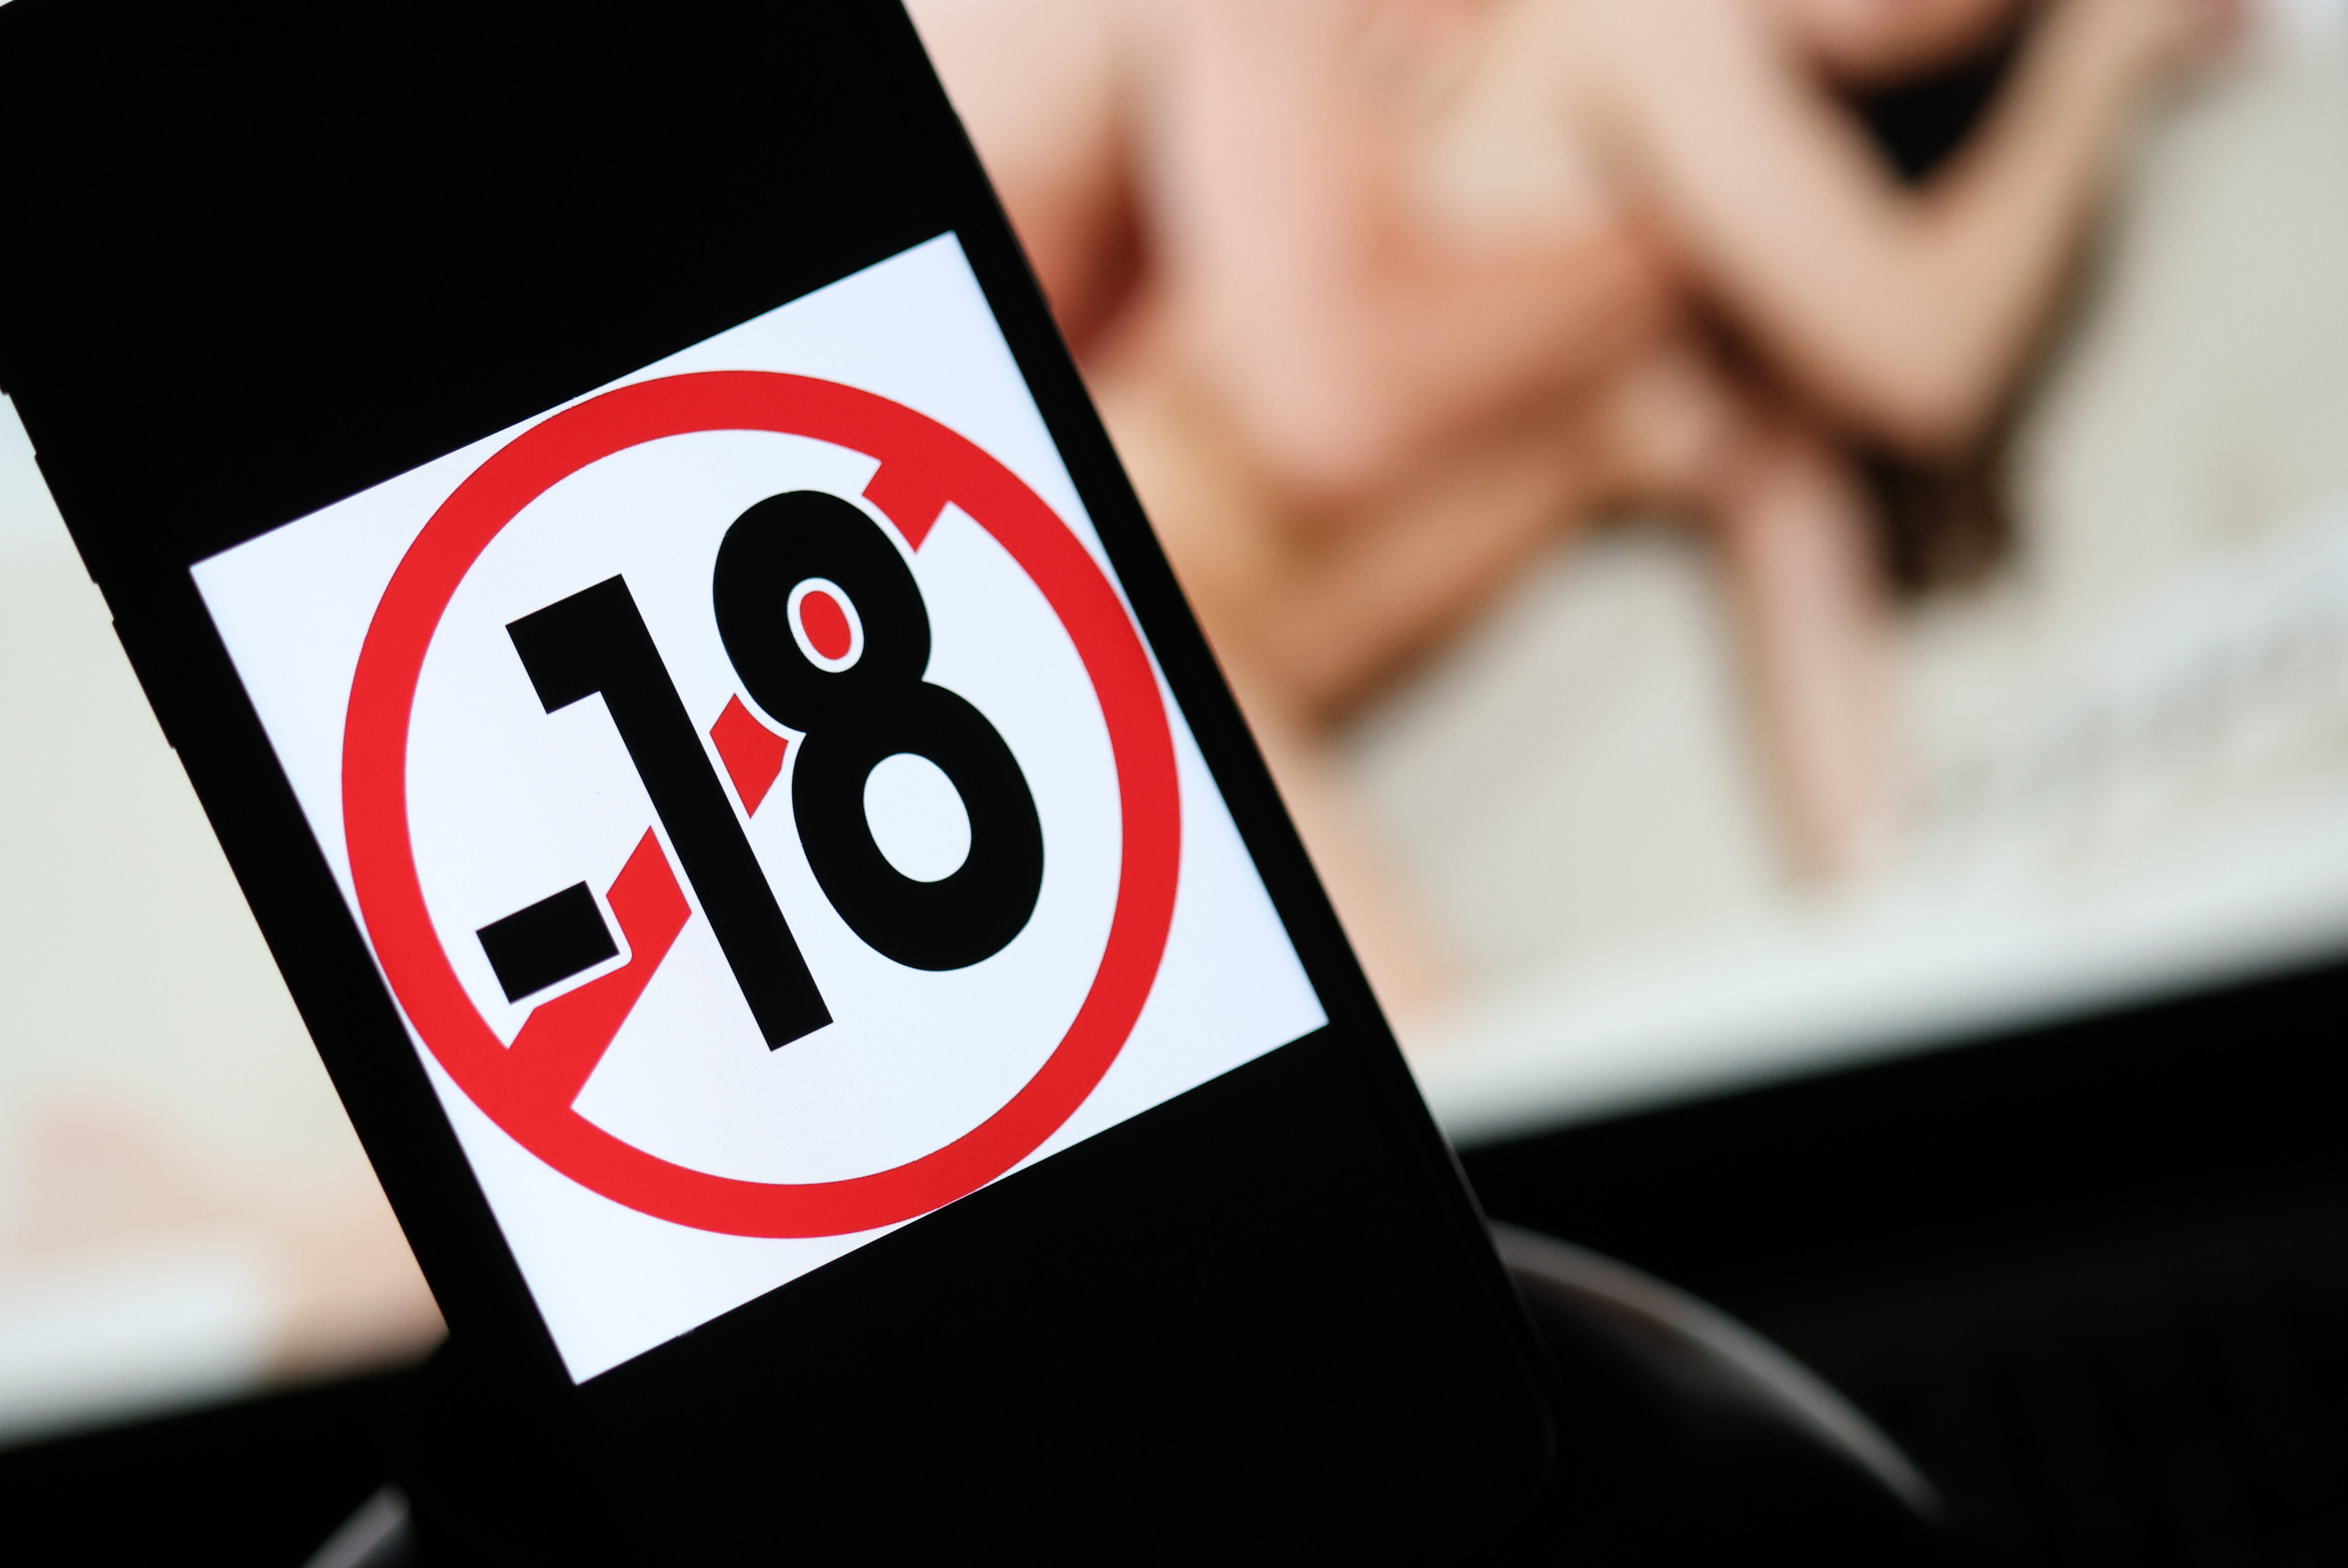 La Fédération Suédoise du Sexe a été officiellement créée par un gérant de clubs de strip-tease. PHOTO LE PARISIEN / ARNAUD JOURNOIS